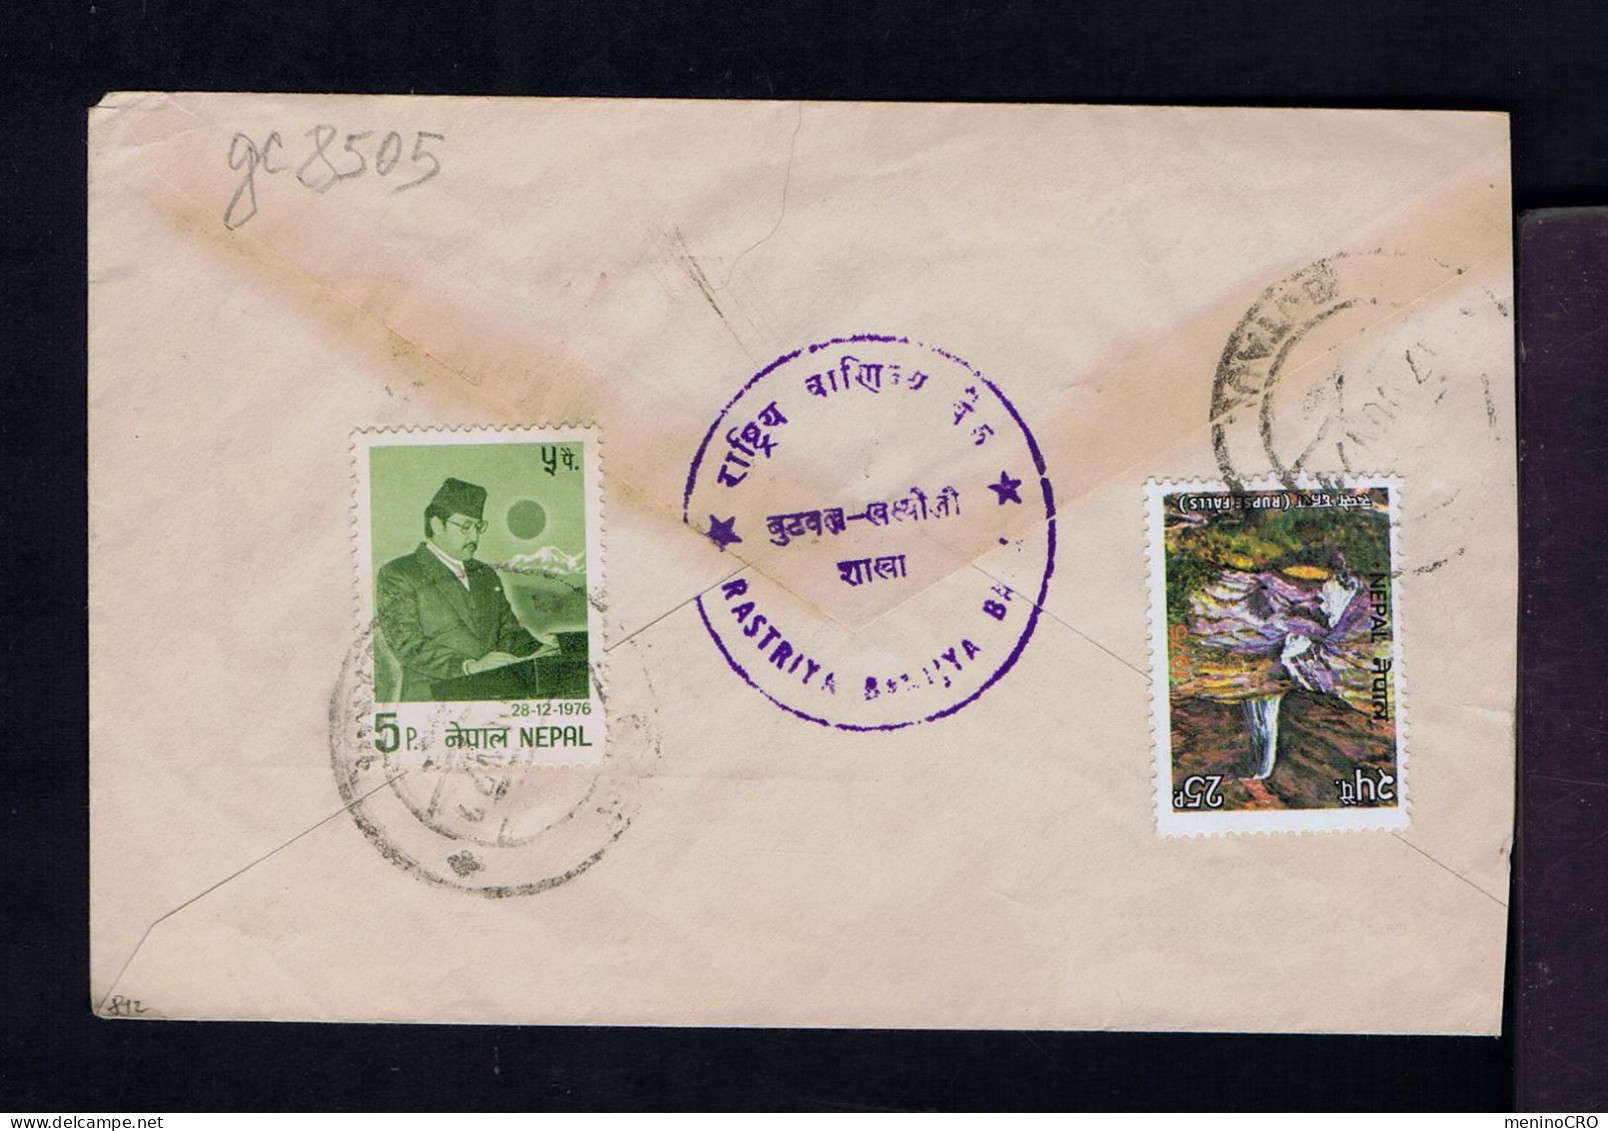 Gc8505 NEPAL "rupse Falls" Landescape Tourisme  28-12-1976 32 Ann. Du Roi Mailed - Familias Reales